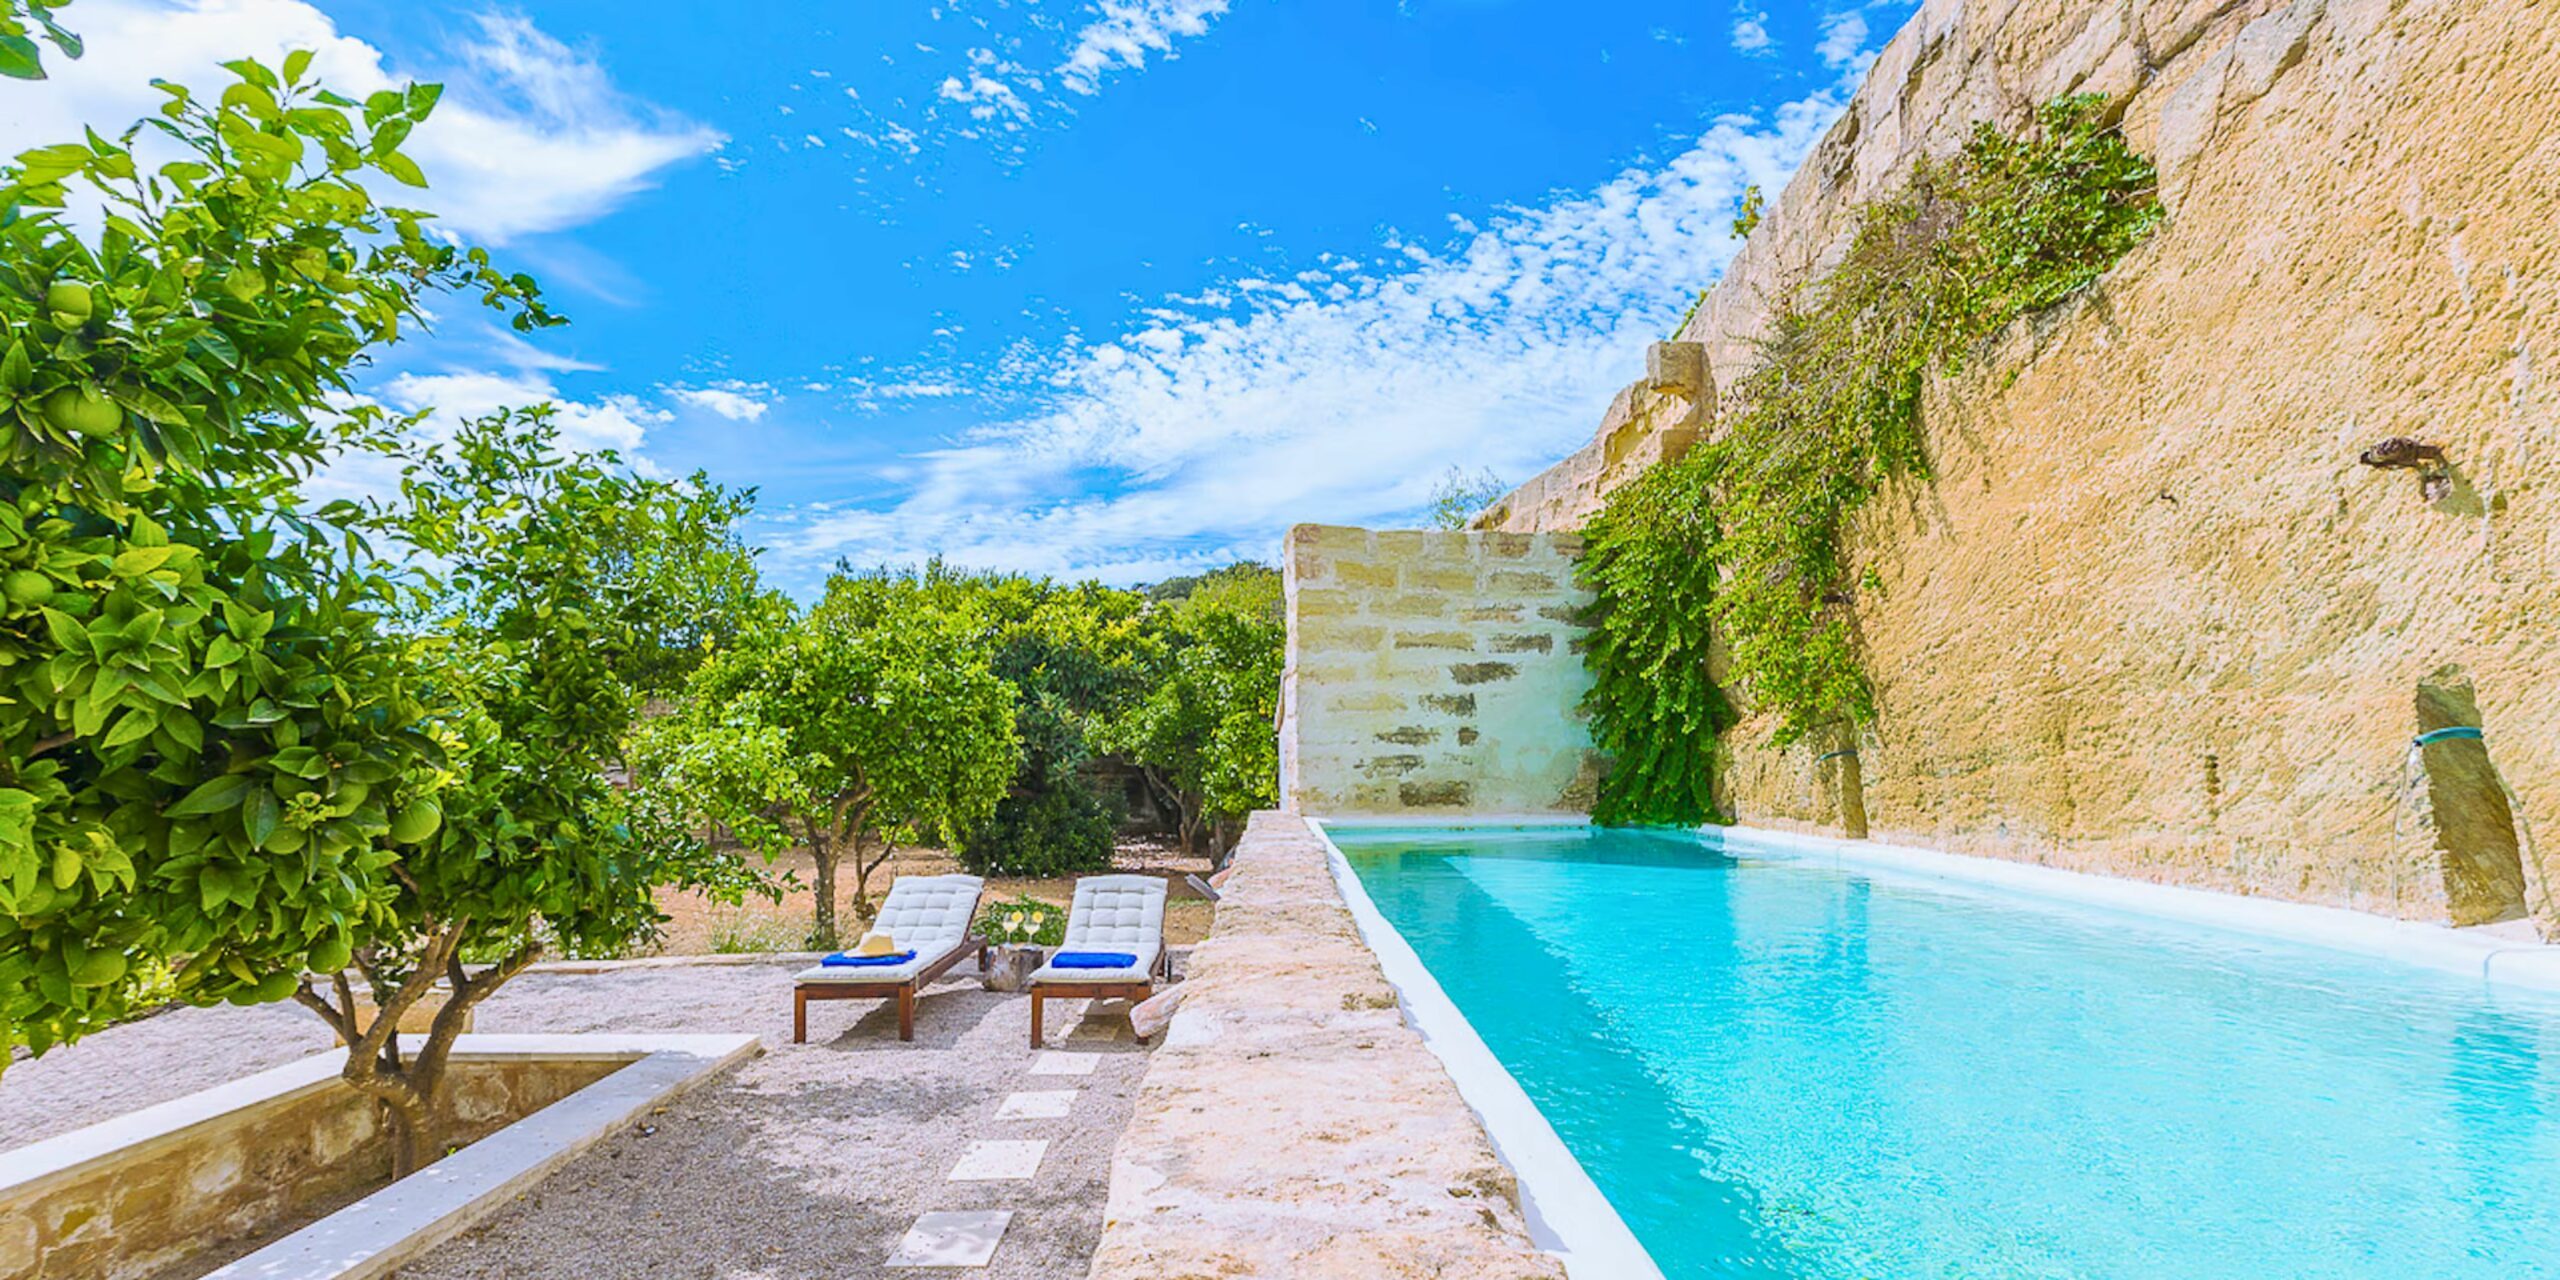 La villa située dans la campagne de Minorque avec sa piscine